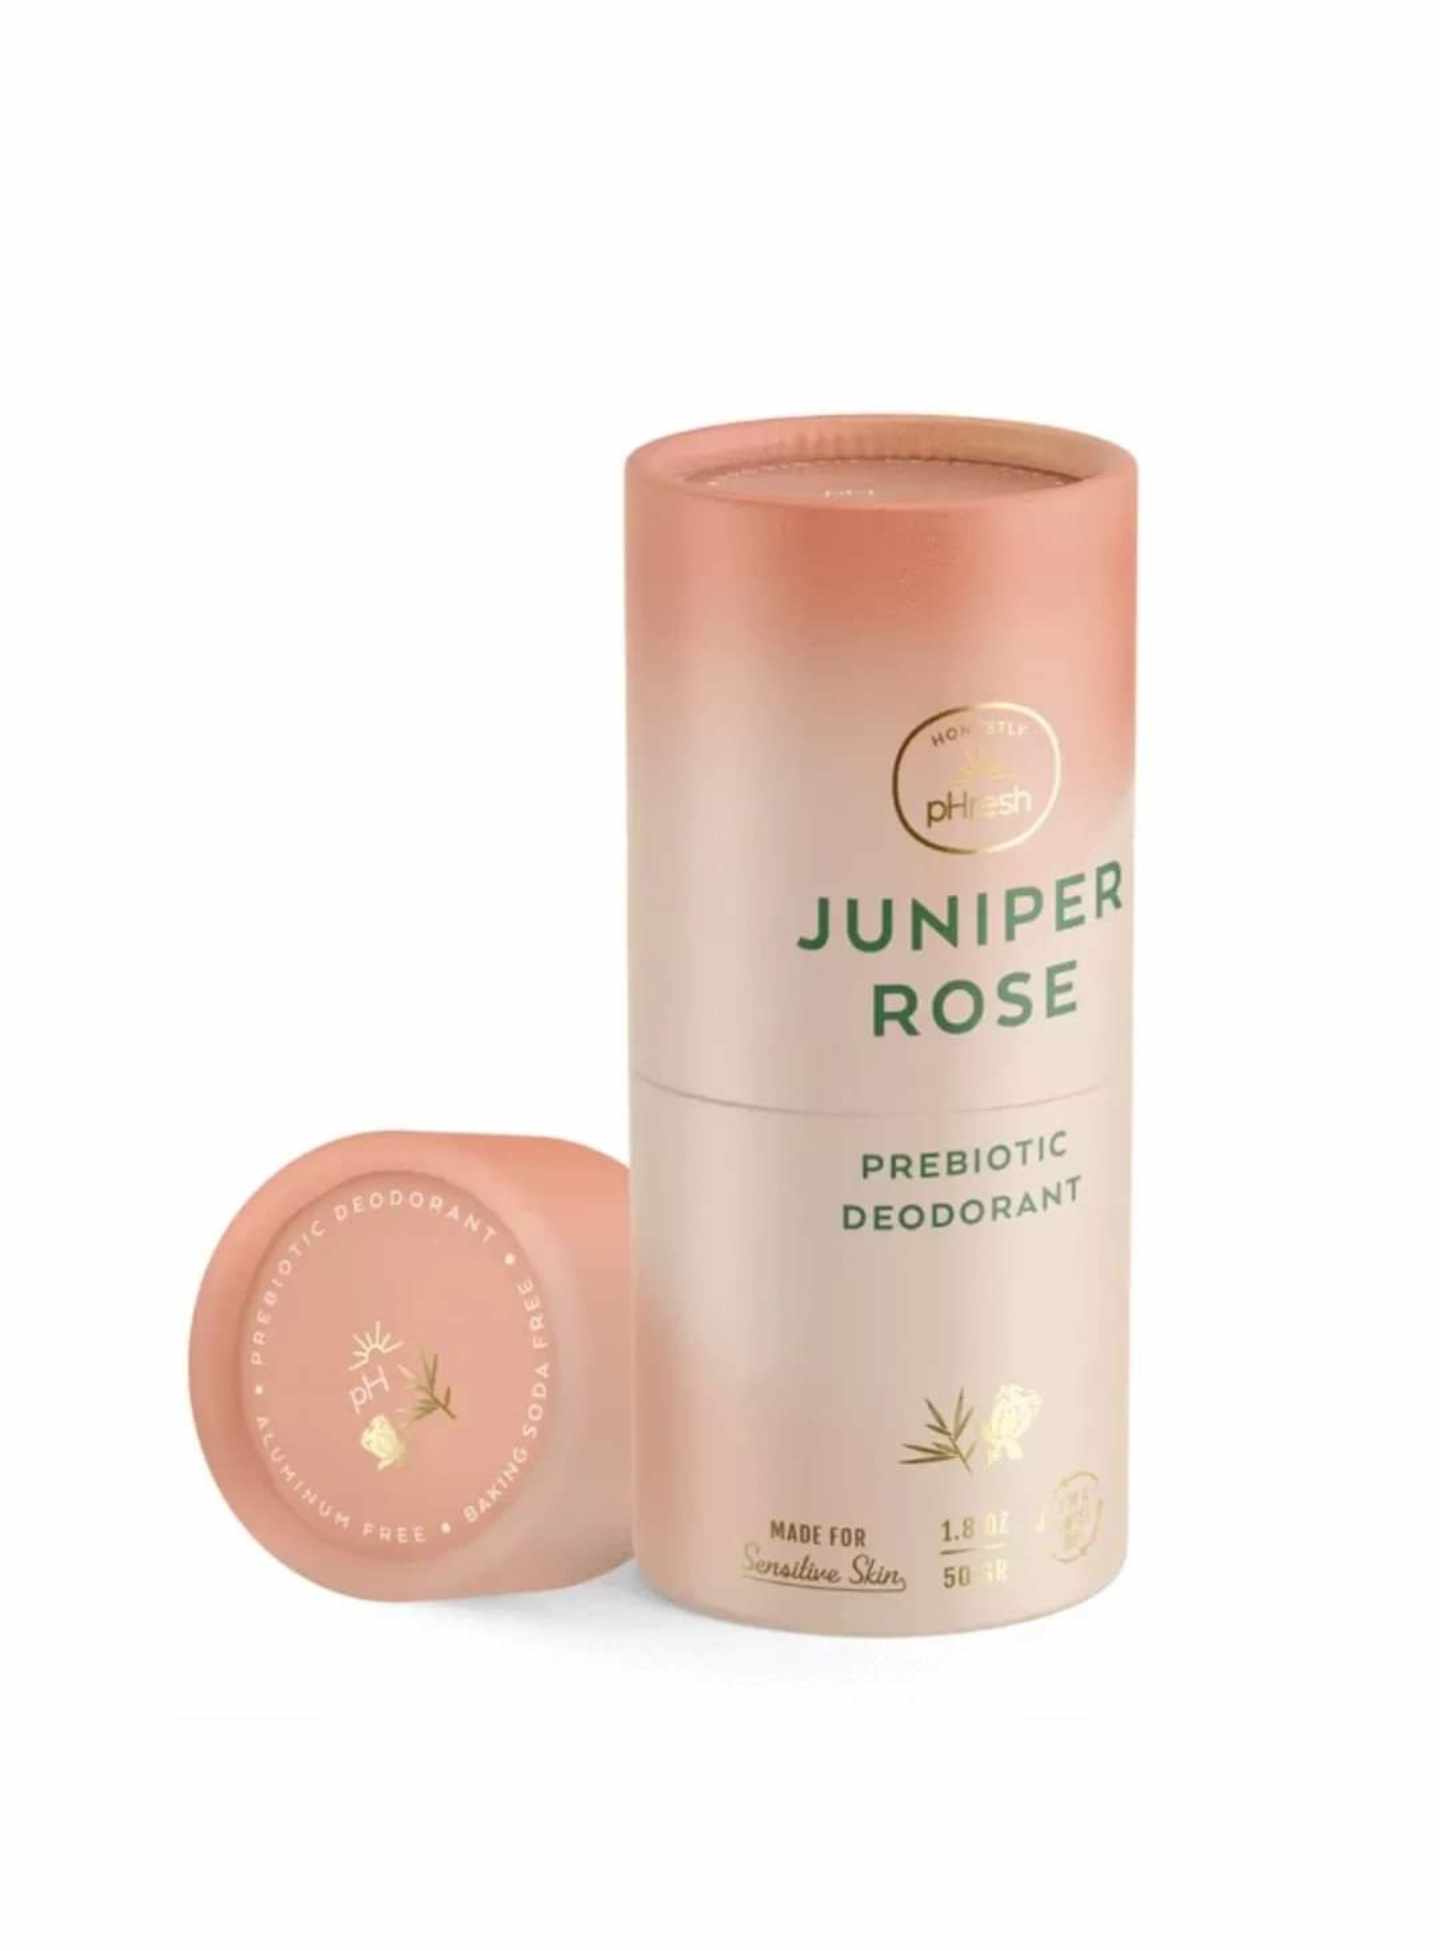 Unisex Prebiotic Deodorant Juniper Rose 50g Twist Up Box, Honestly pHresh